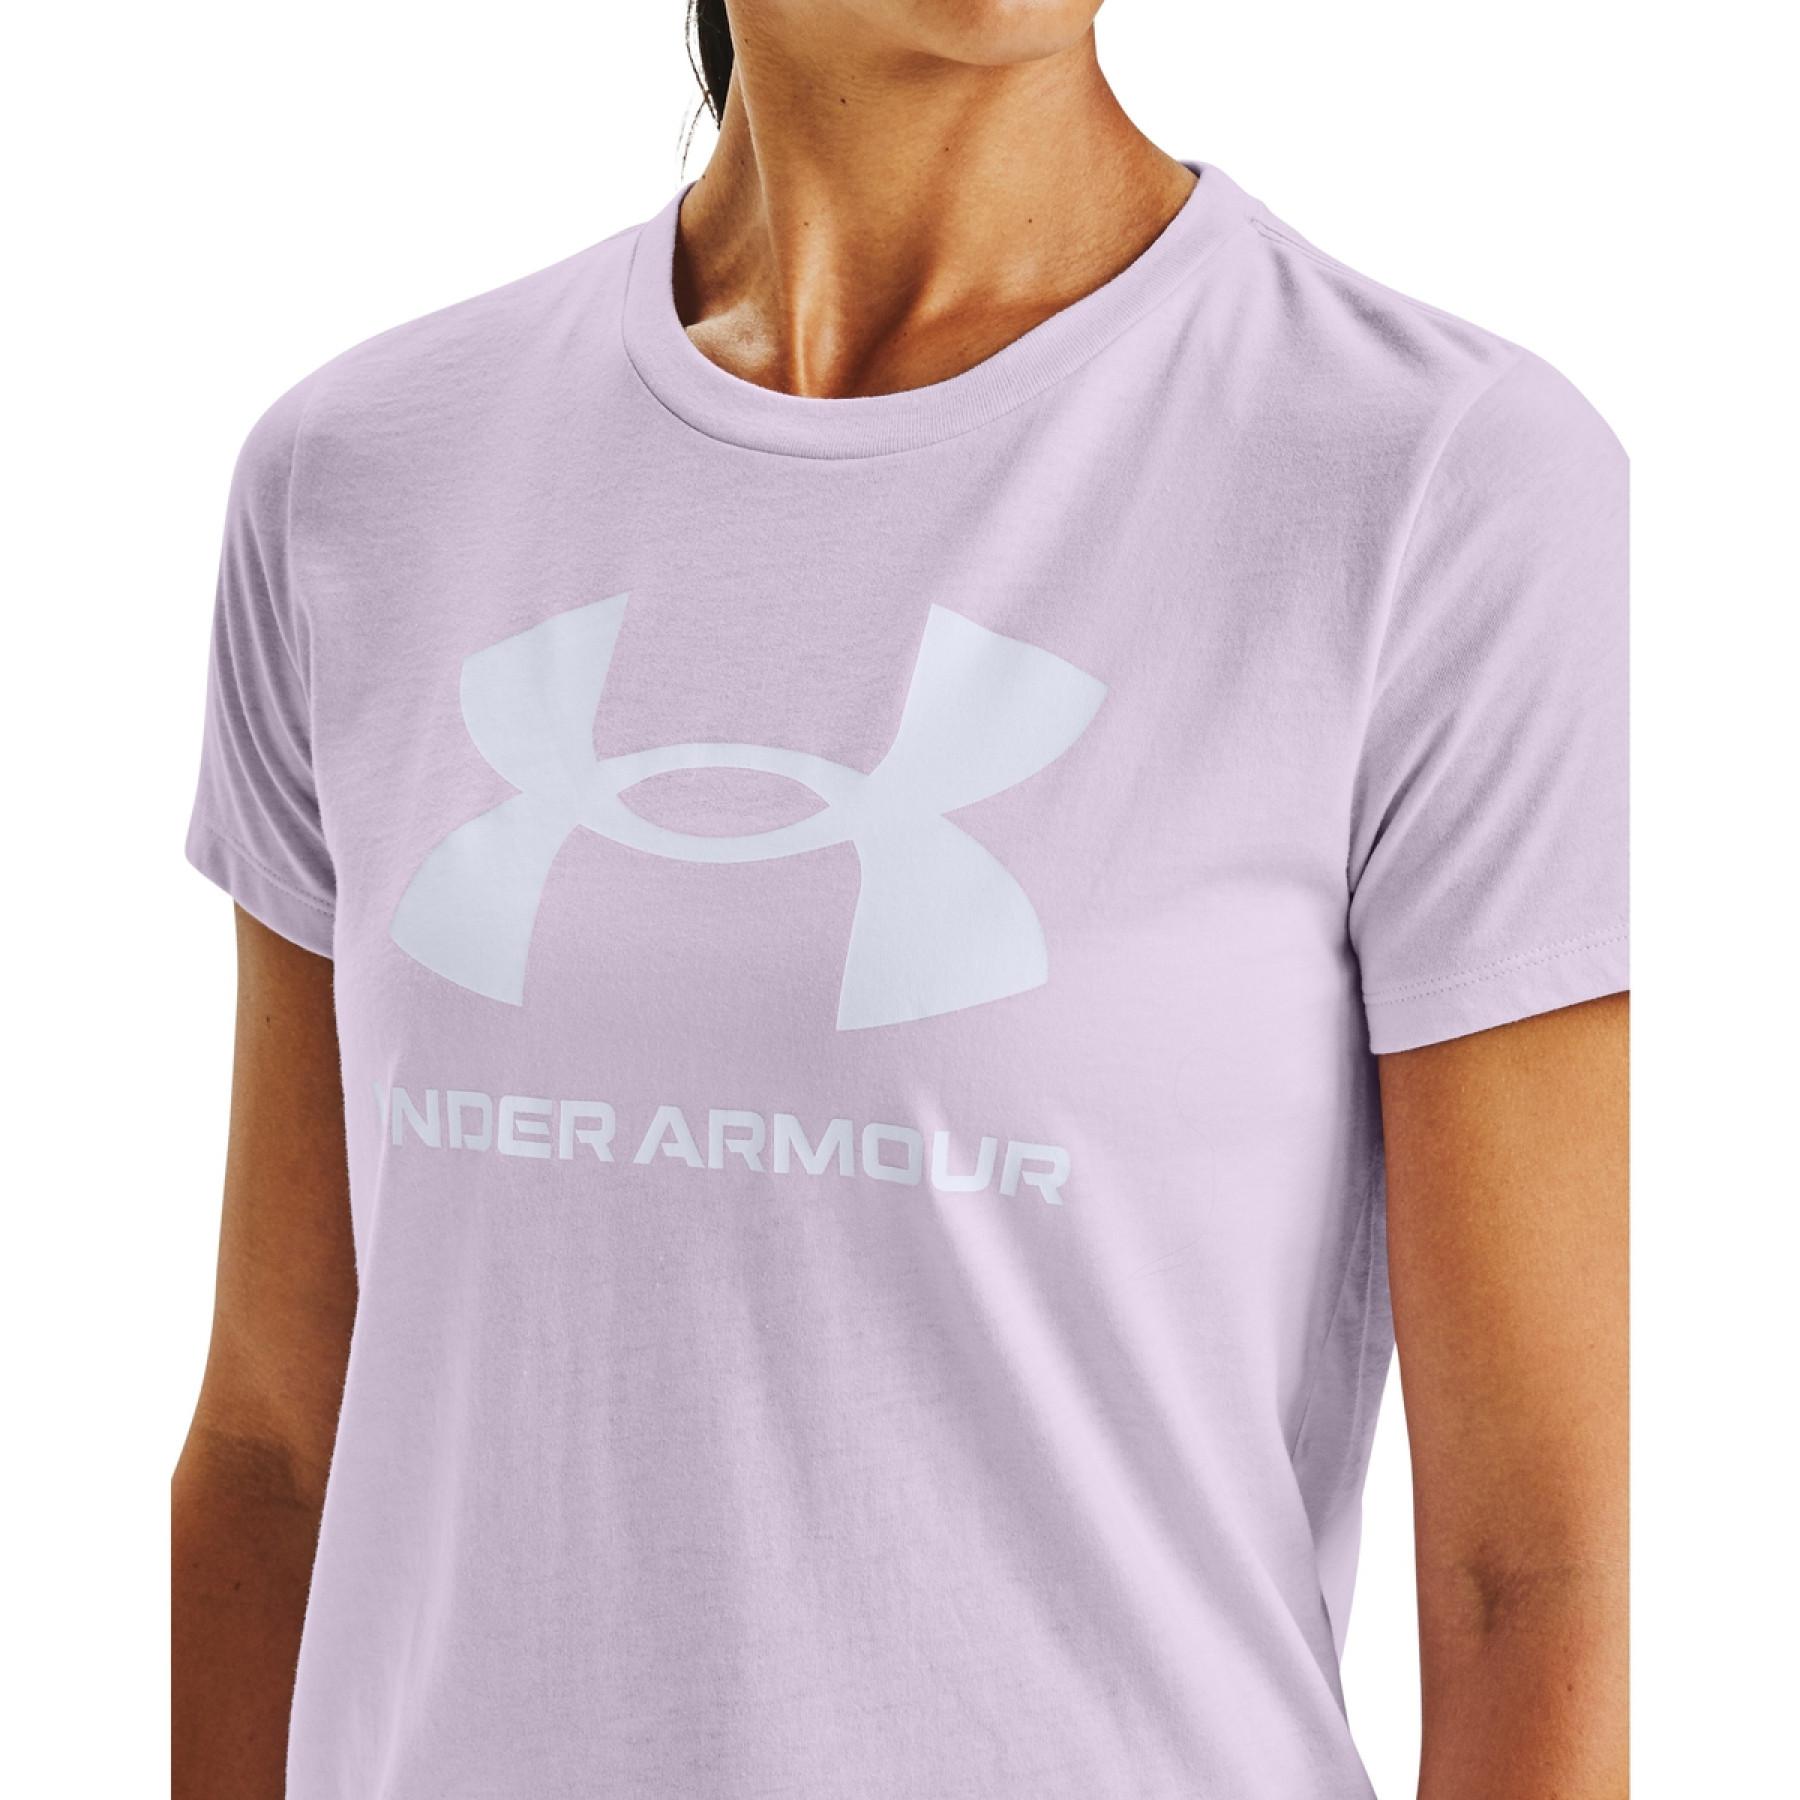 T-shirt femme Under Armour à manches courtes Sportstyle Graphic